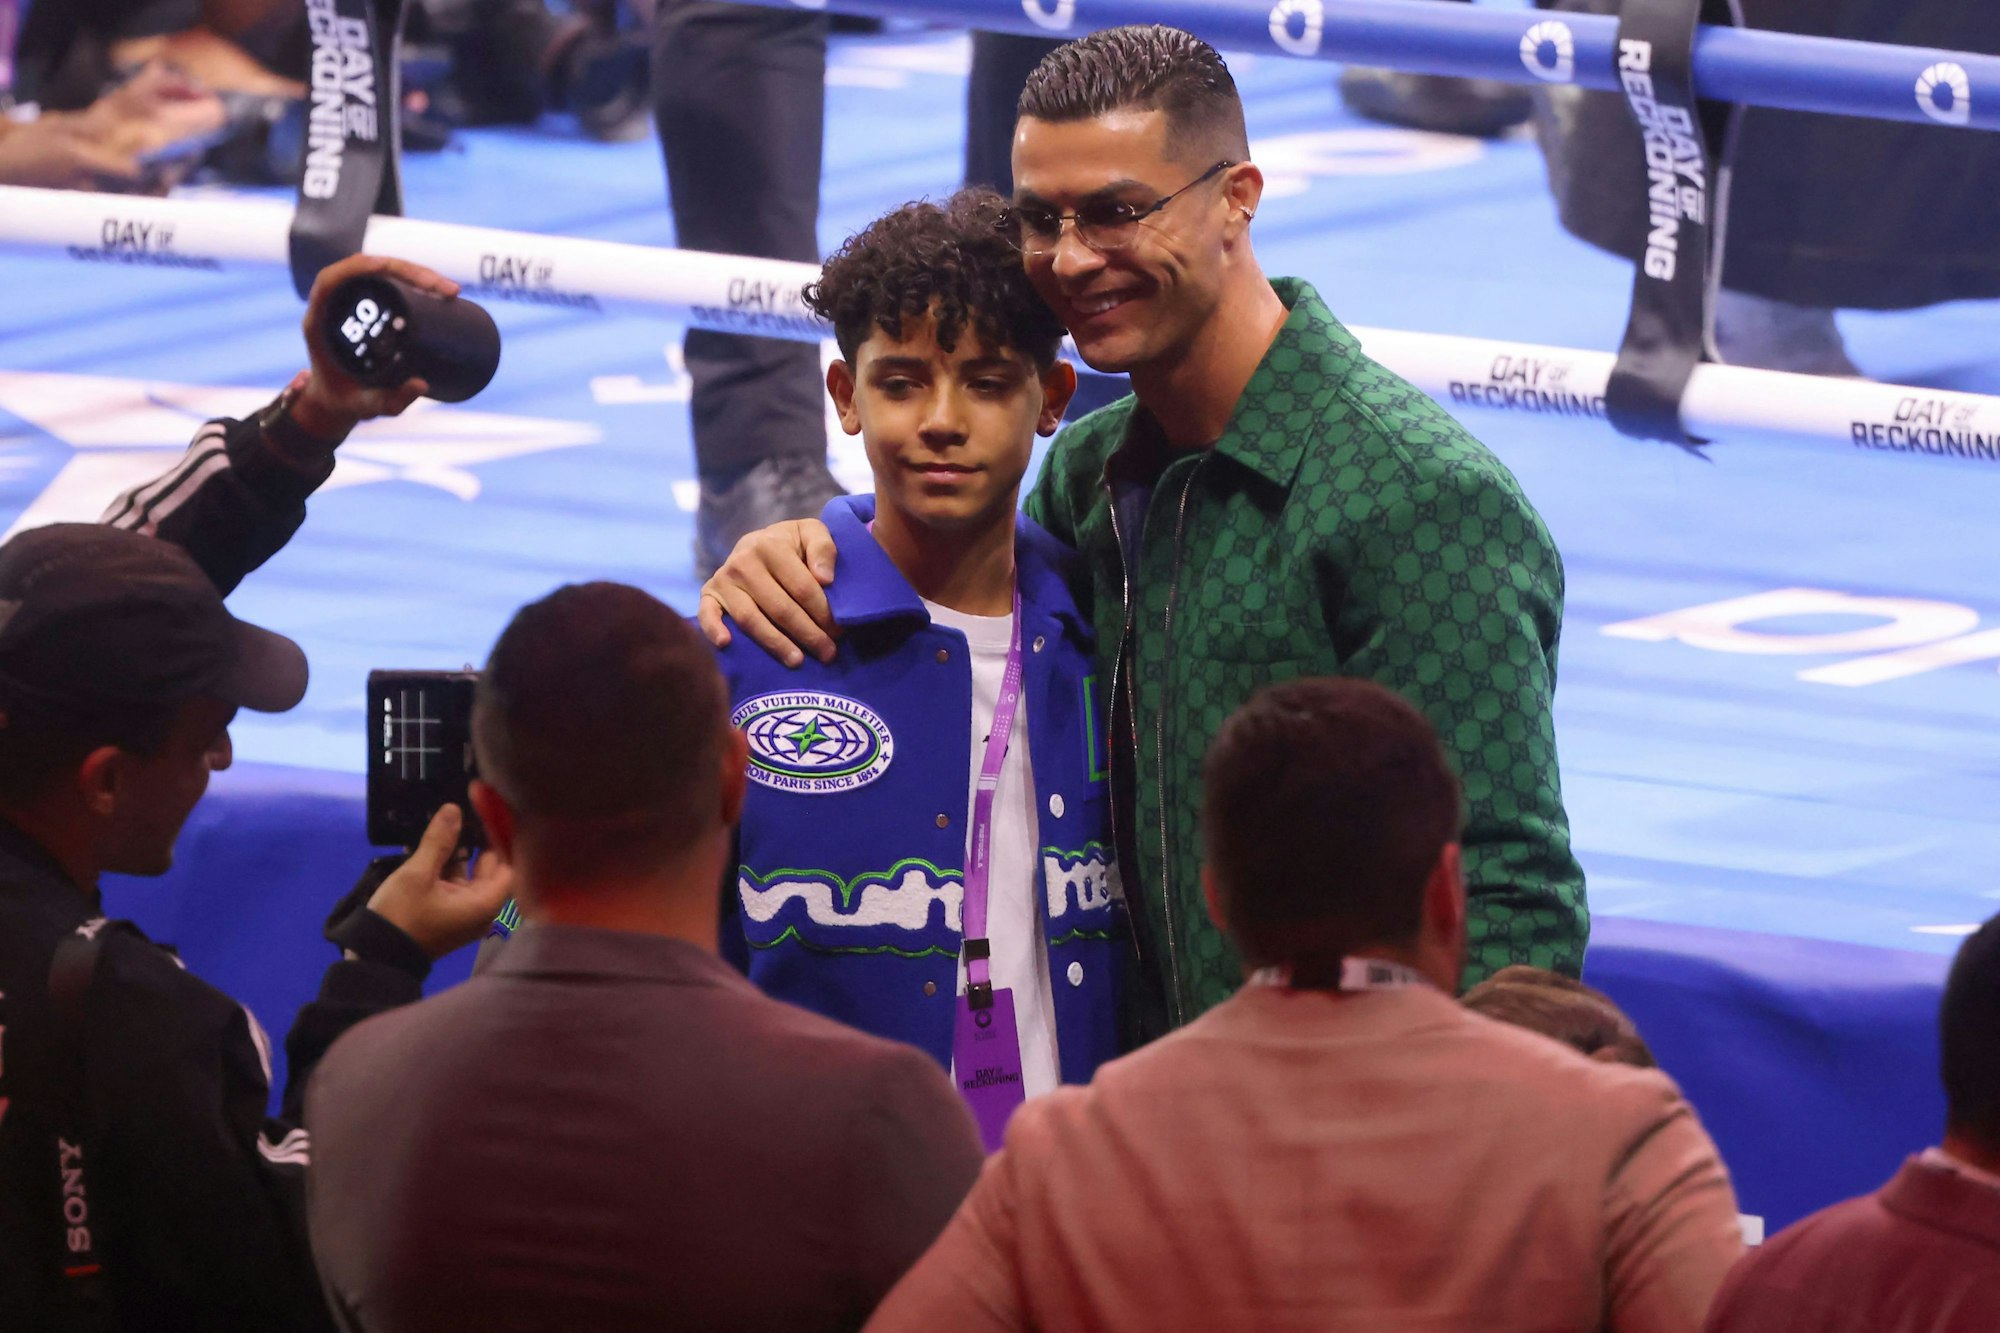 Cristiano Ronaldo und sein Sohn posieren vor dem Boxring für Fotos.